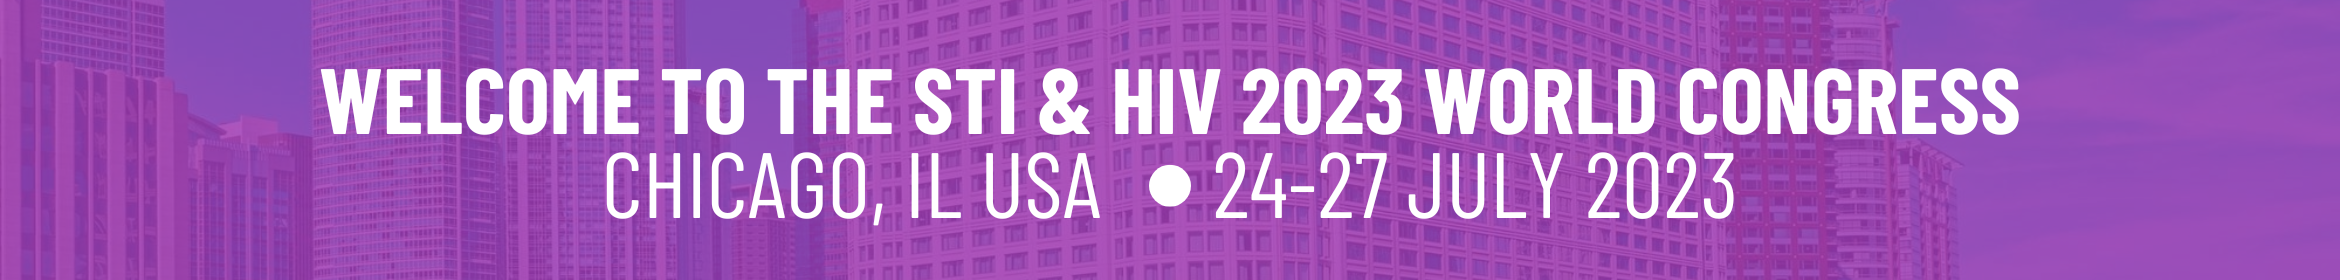 STI & HIV 2023 World Congress Main banner